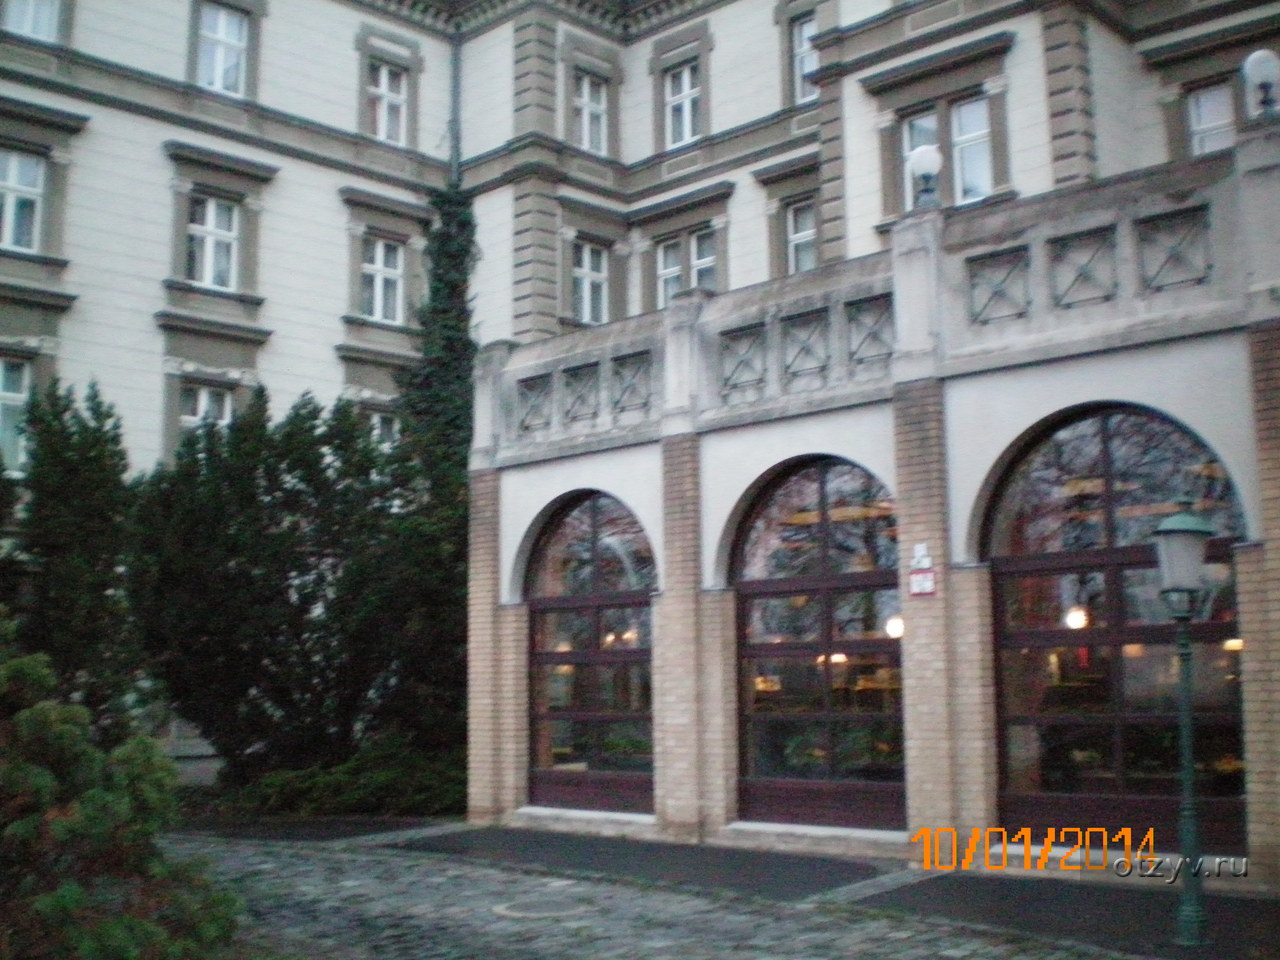 Danubius Grand Hotel Margitsziget